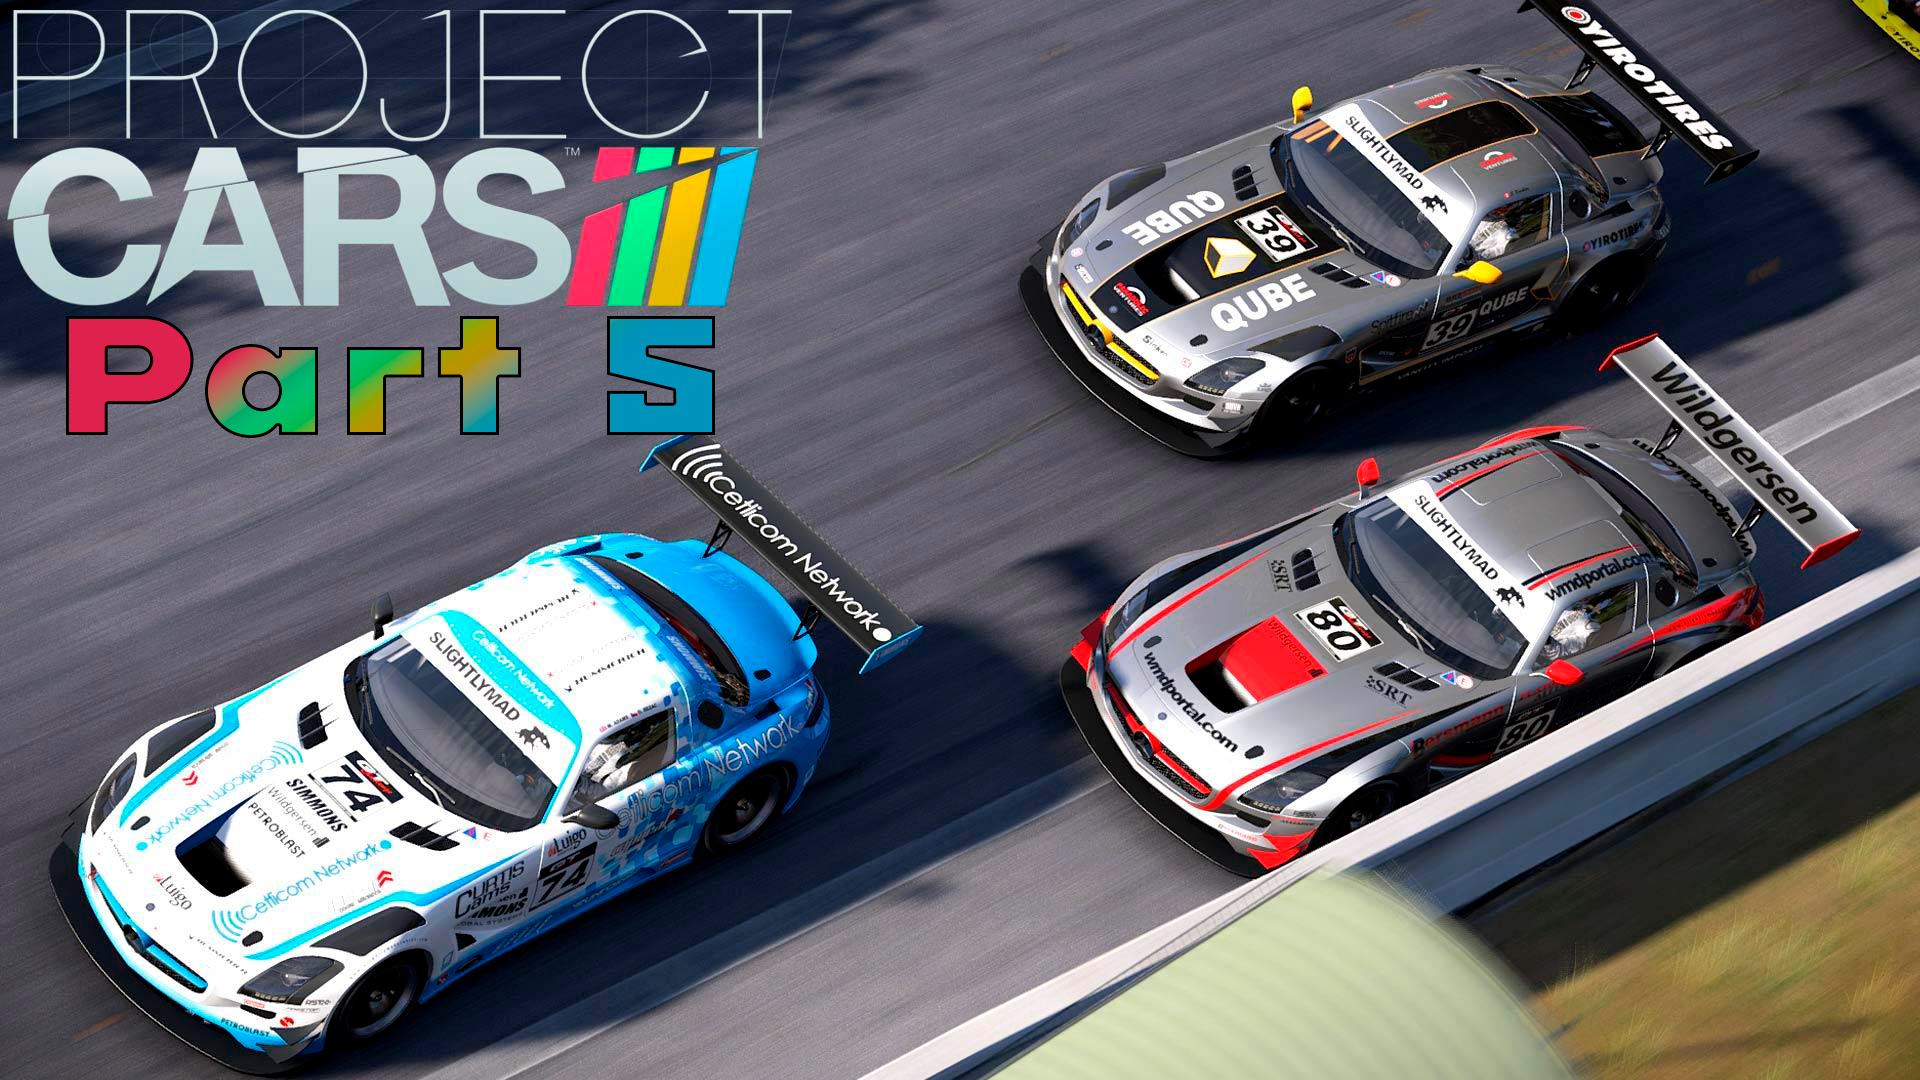 Прохождение Project CARS (Часть 5) Картинг #projectcars #SimRacing  #gametour  #2015 #karting